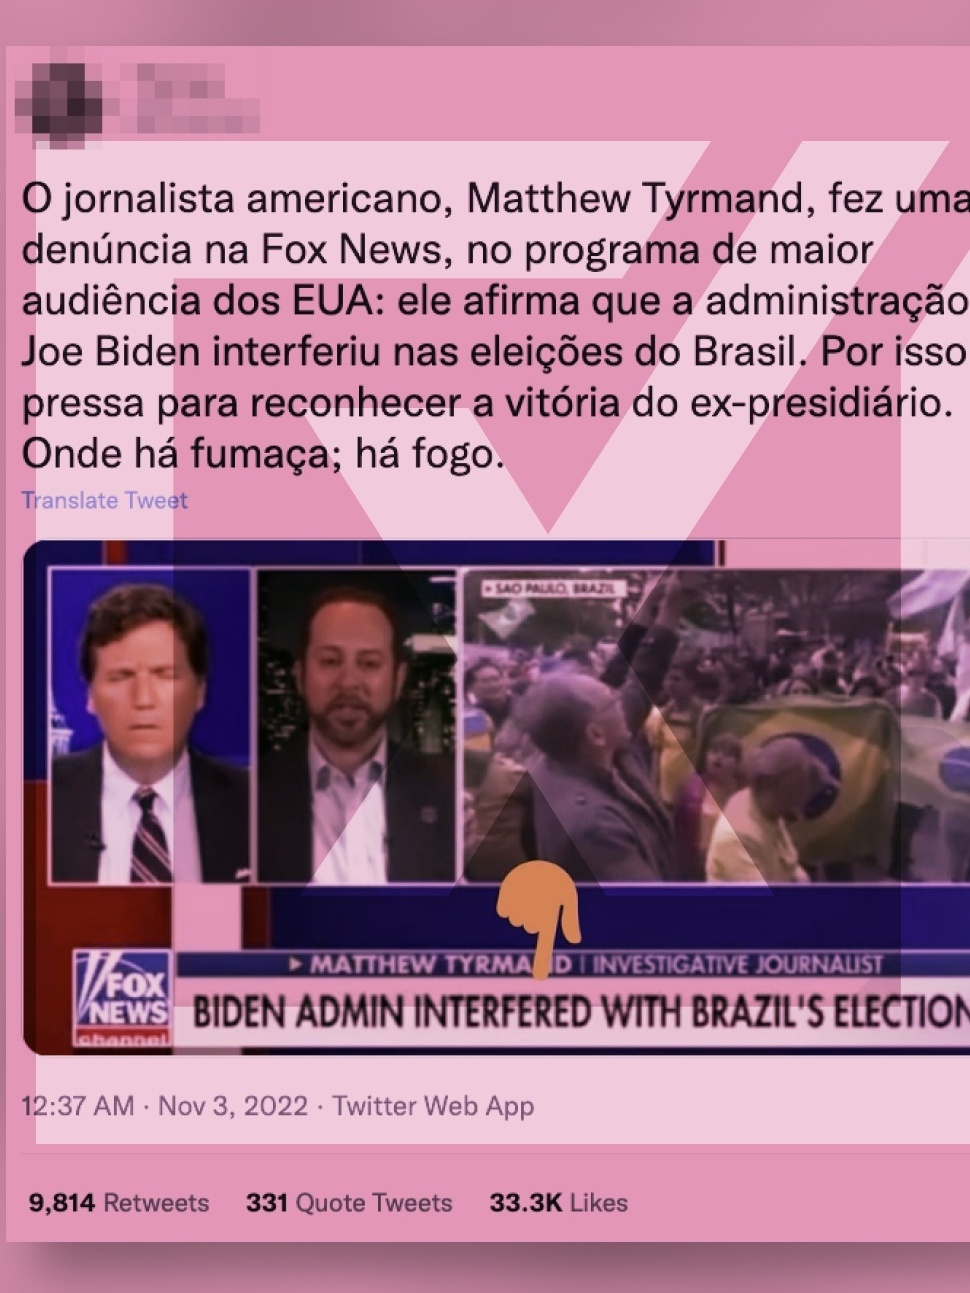 Eleições nos Estados Unidos: veja os memes que dominam a internet  brasileira - Jornal O Globo